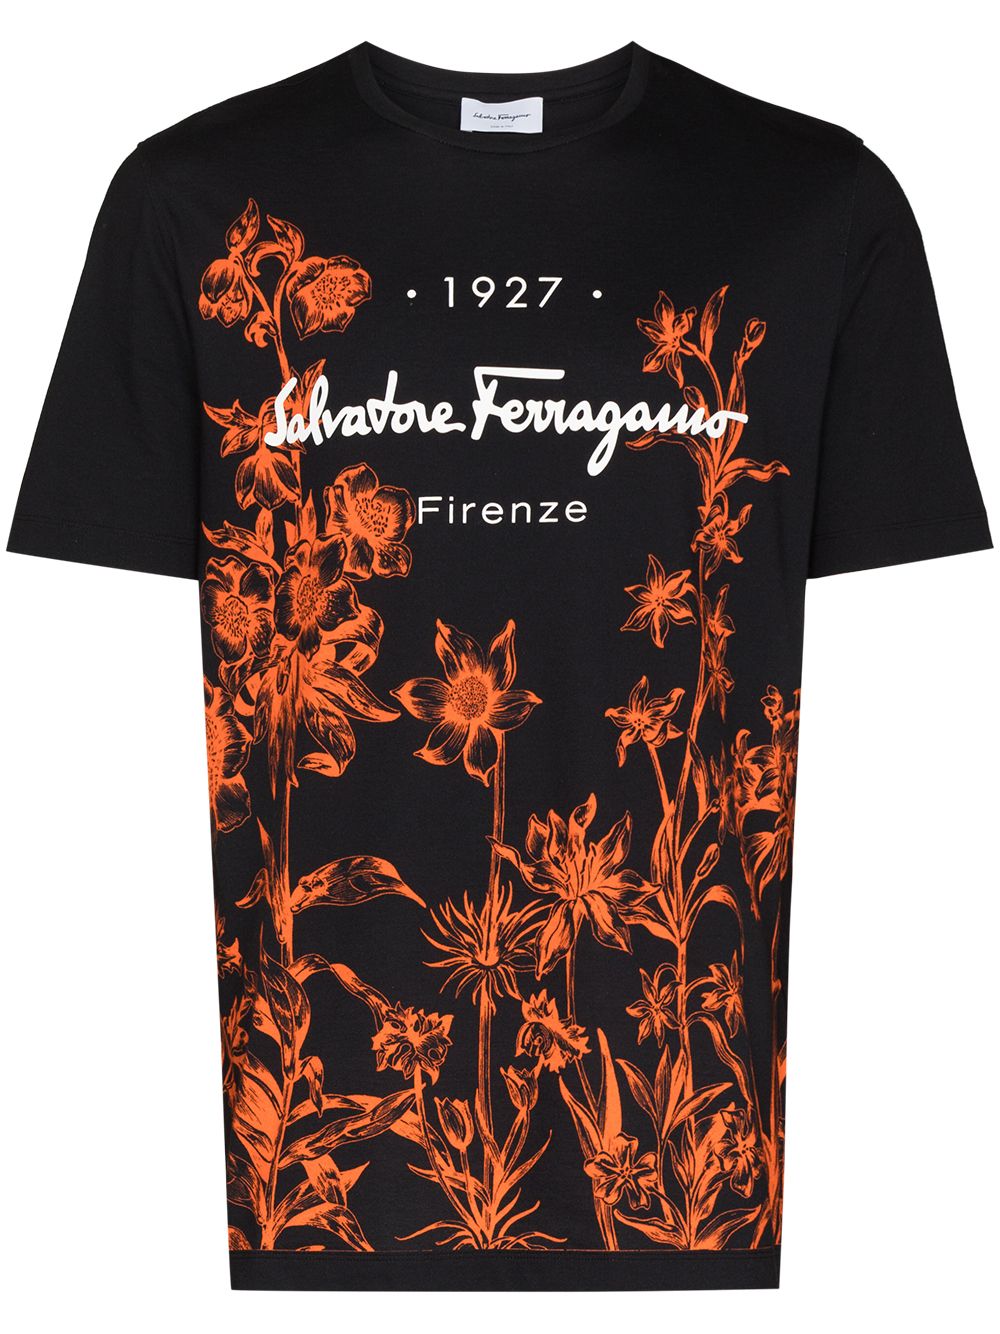 фото Salvatore ferragamo футболка 1927 с цветочным принтом